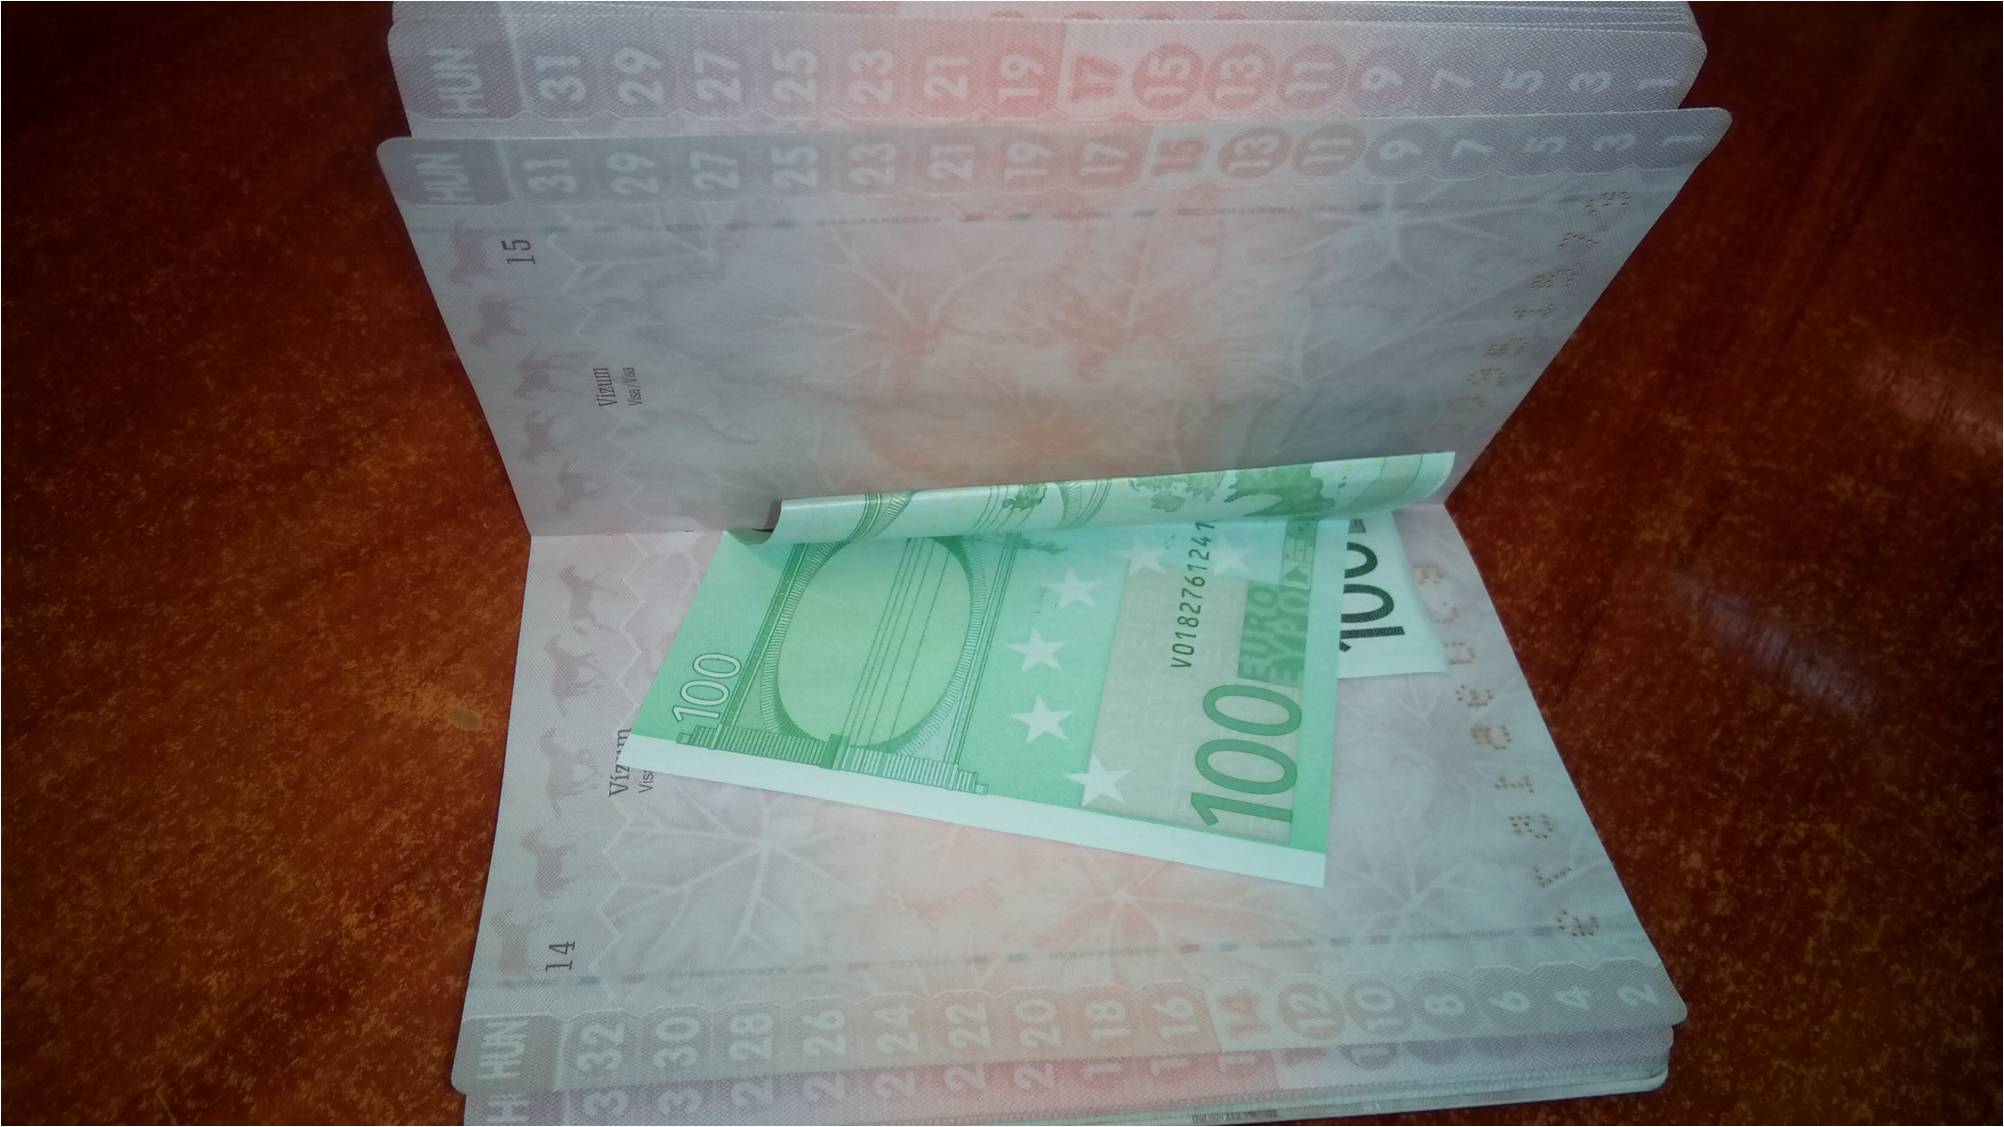 100 євро хабара запропонувала прикордонникам громадянка  Угорщини. Учора ввечері в пункті пропуску Лужанка на в'їзд в Україну прибув автомобіль марки 